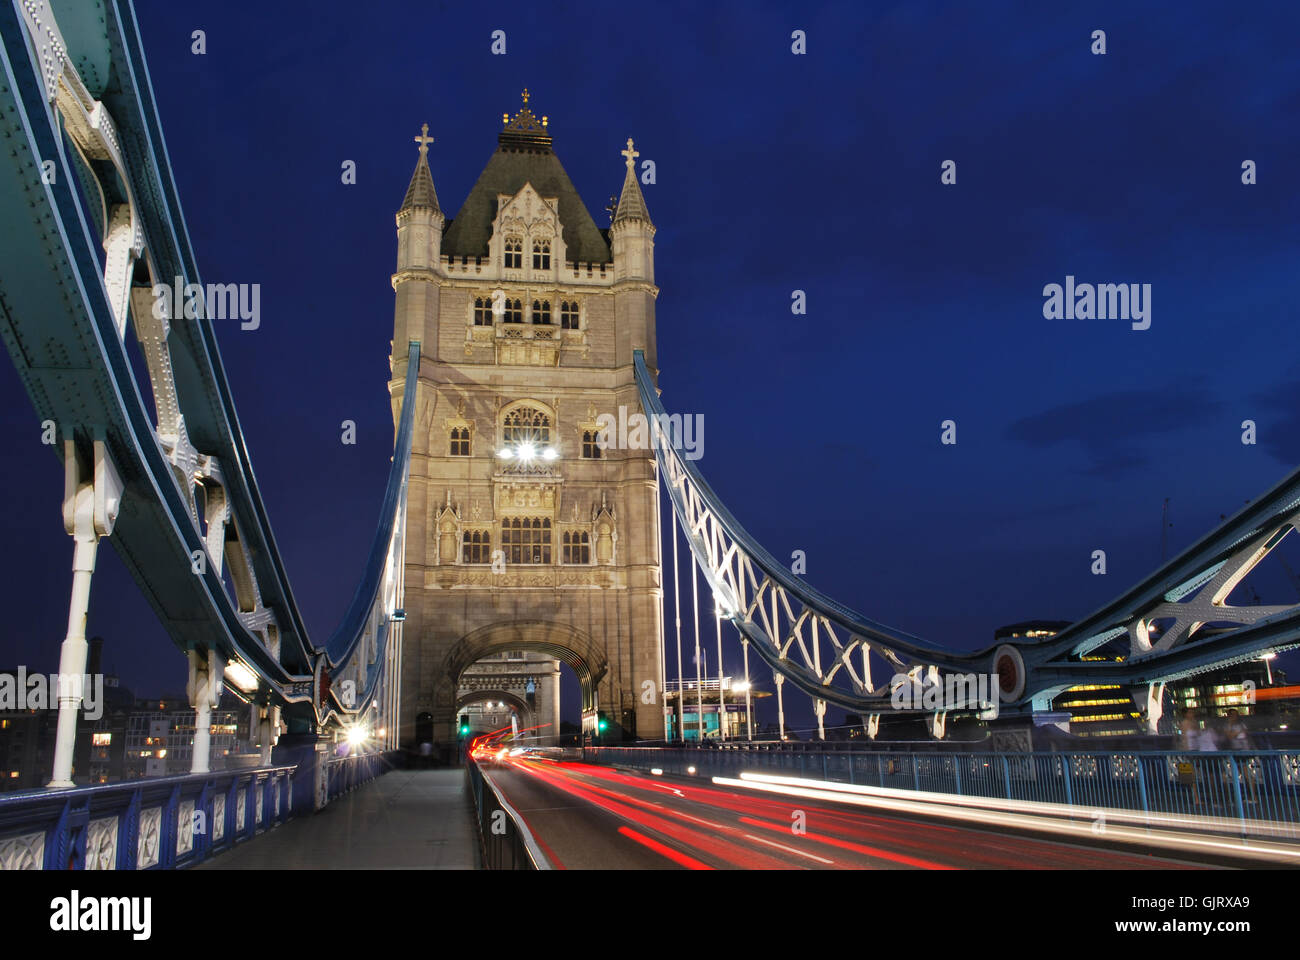 attraction london landmark Stock Photo